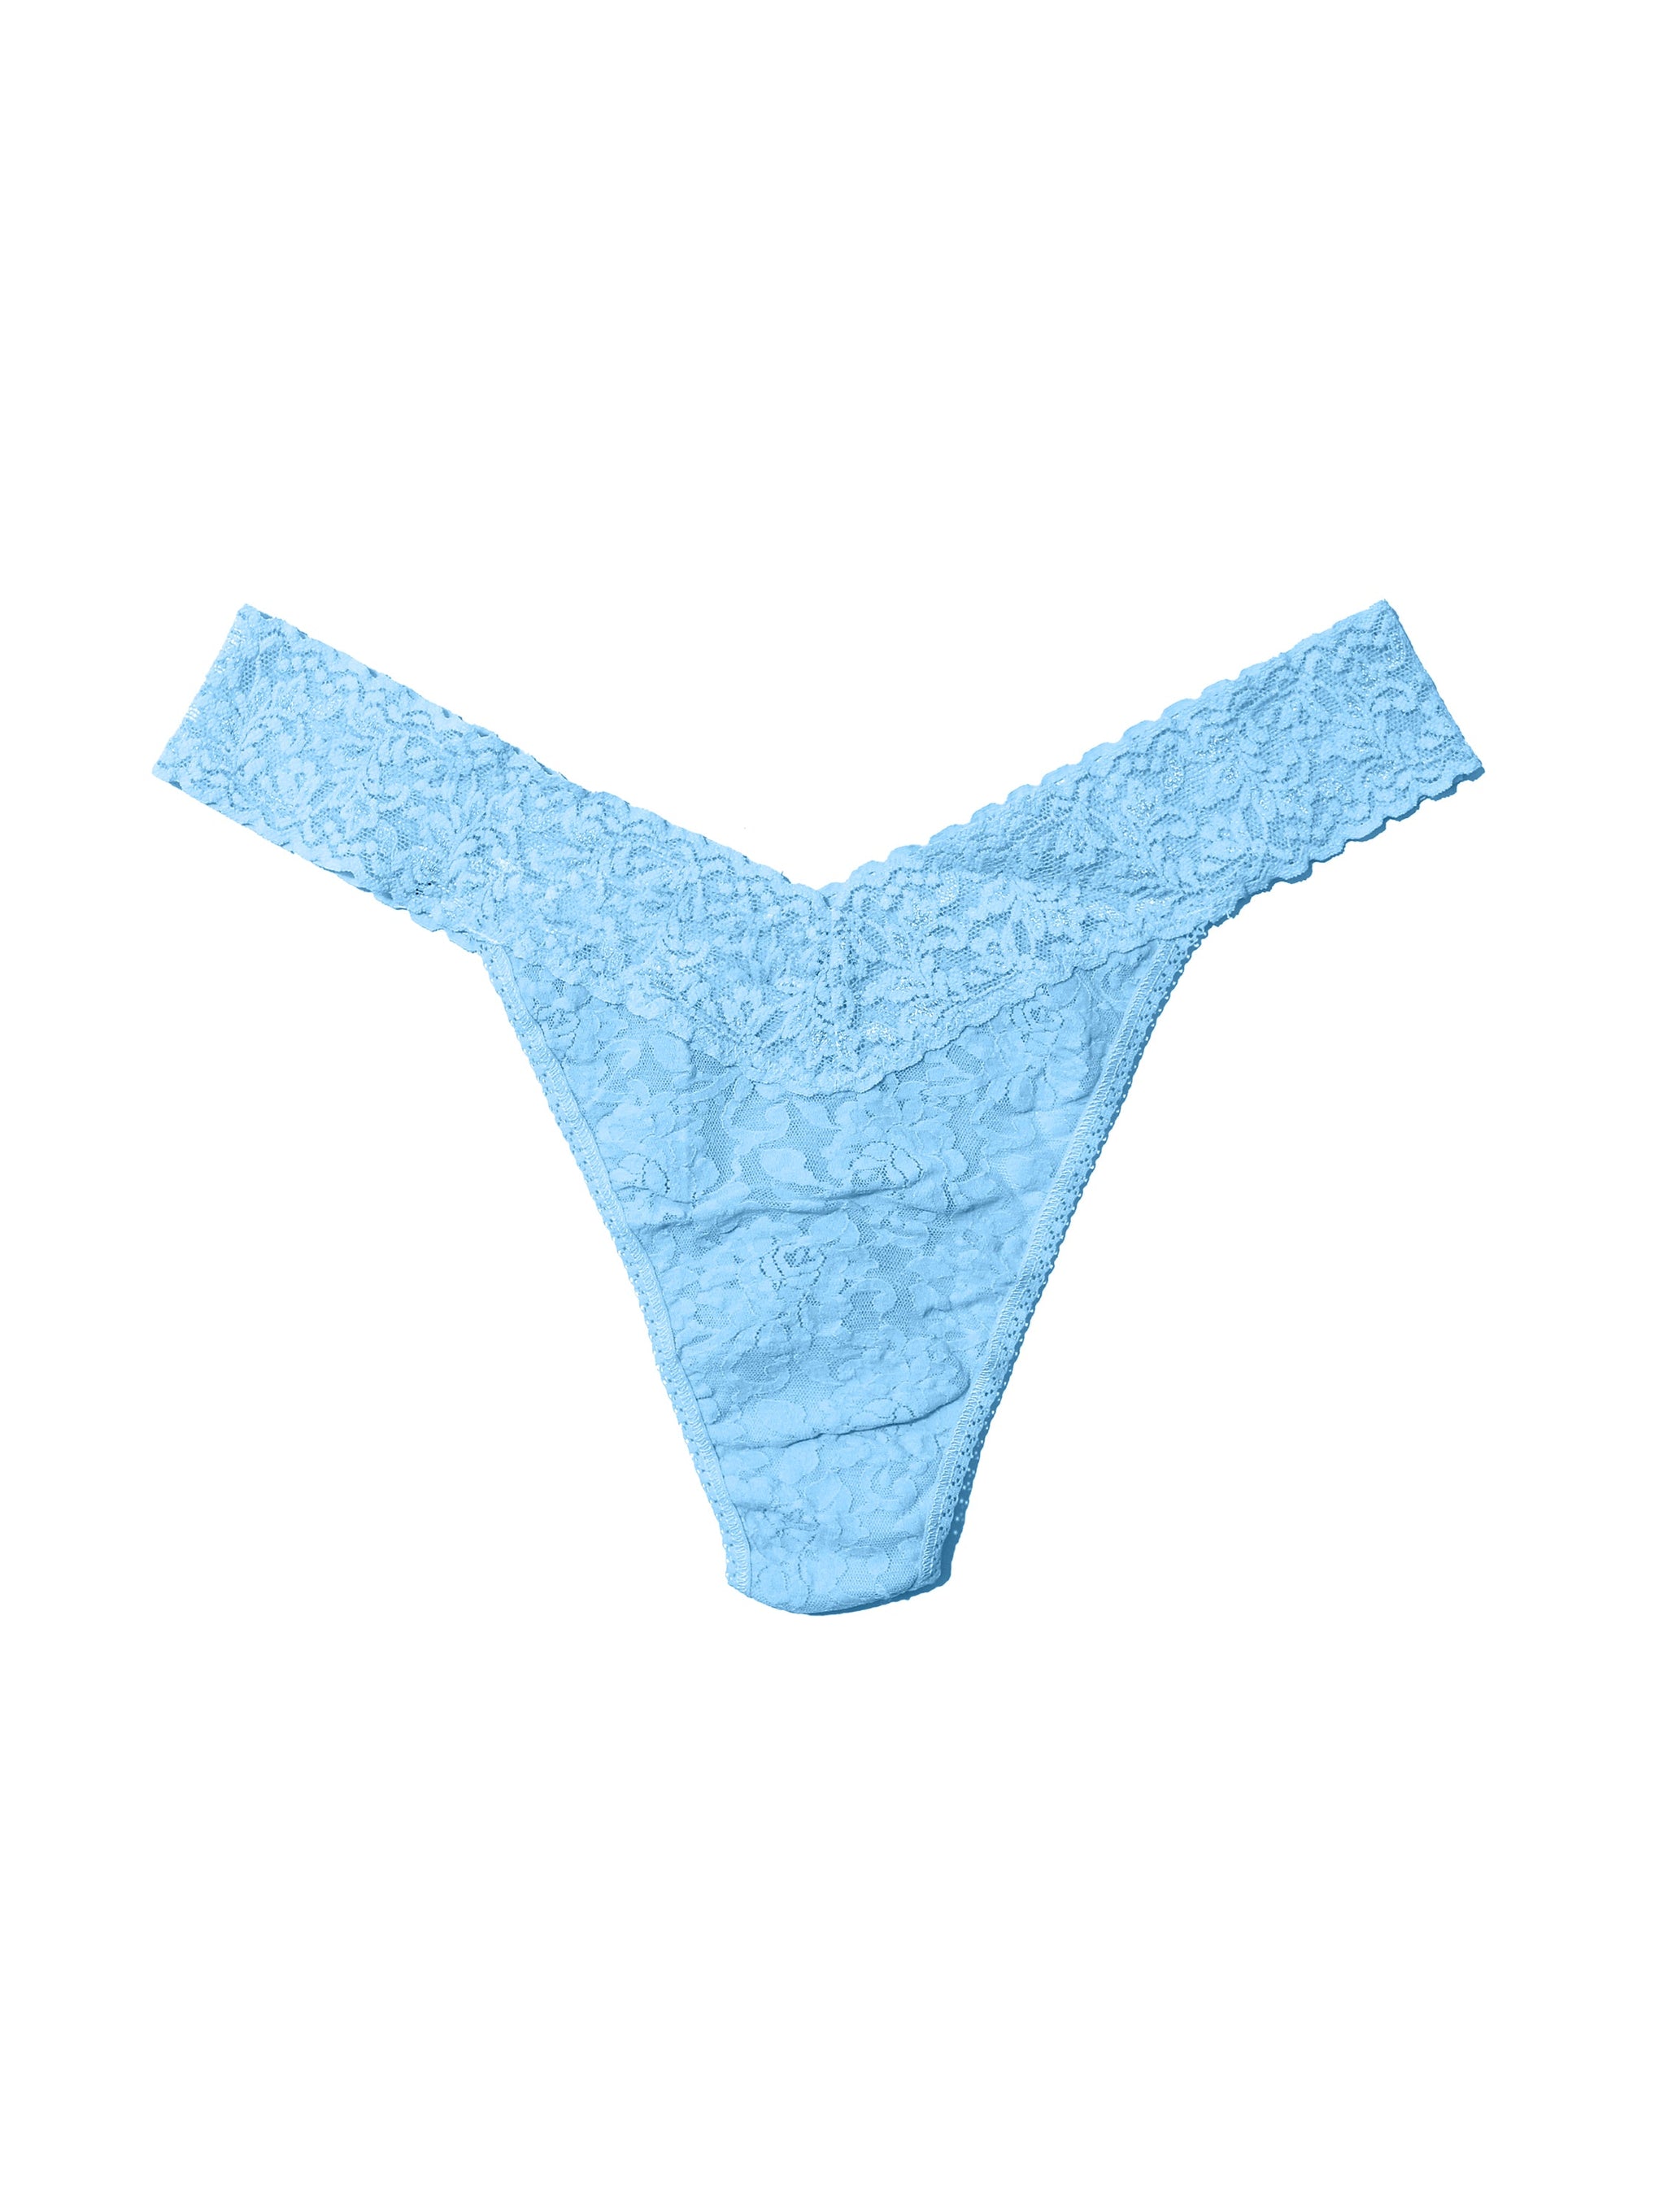 Generic Men's Cotton Spandex Thong Brief Innerwear Underwear (blue